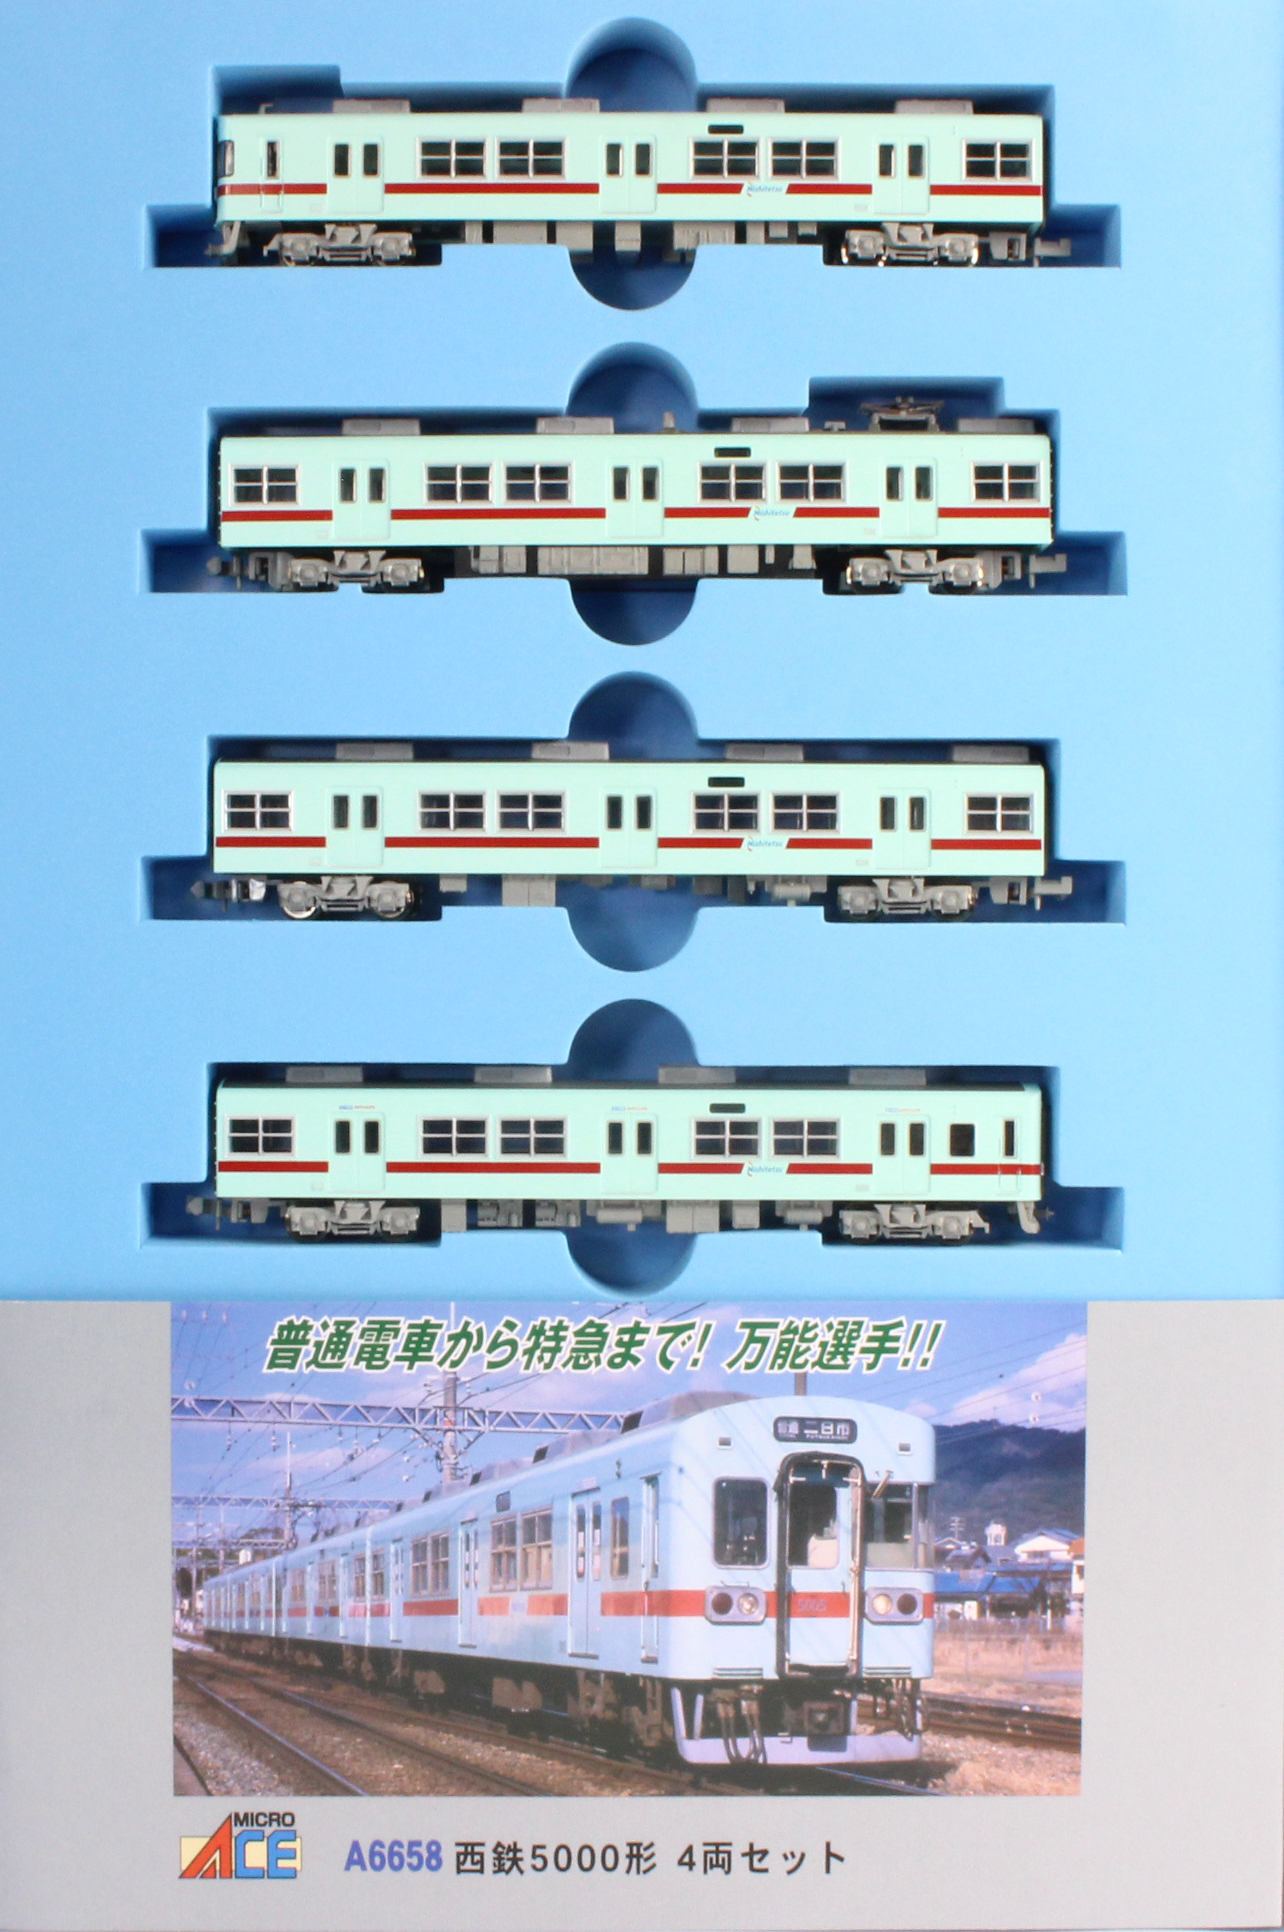 マイクロエース A6656 西鉄 5000形 新社紋 4両セット 西日本鉄道 福岡 - 鉄道模型